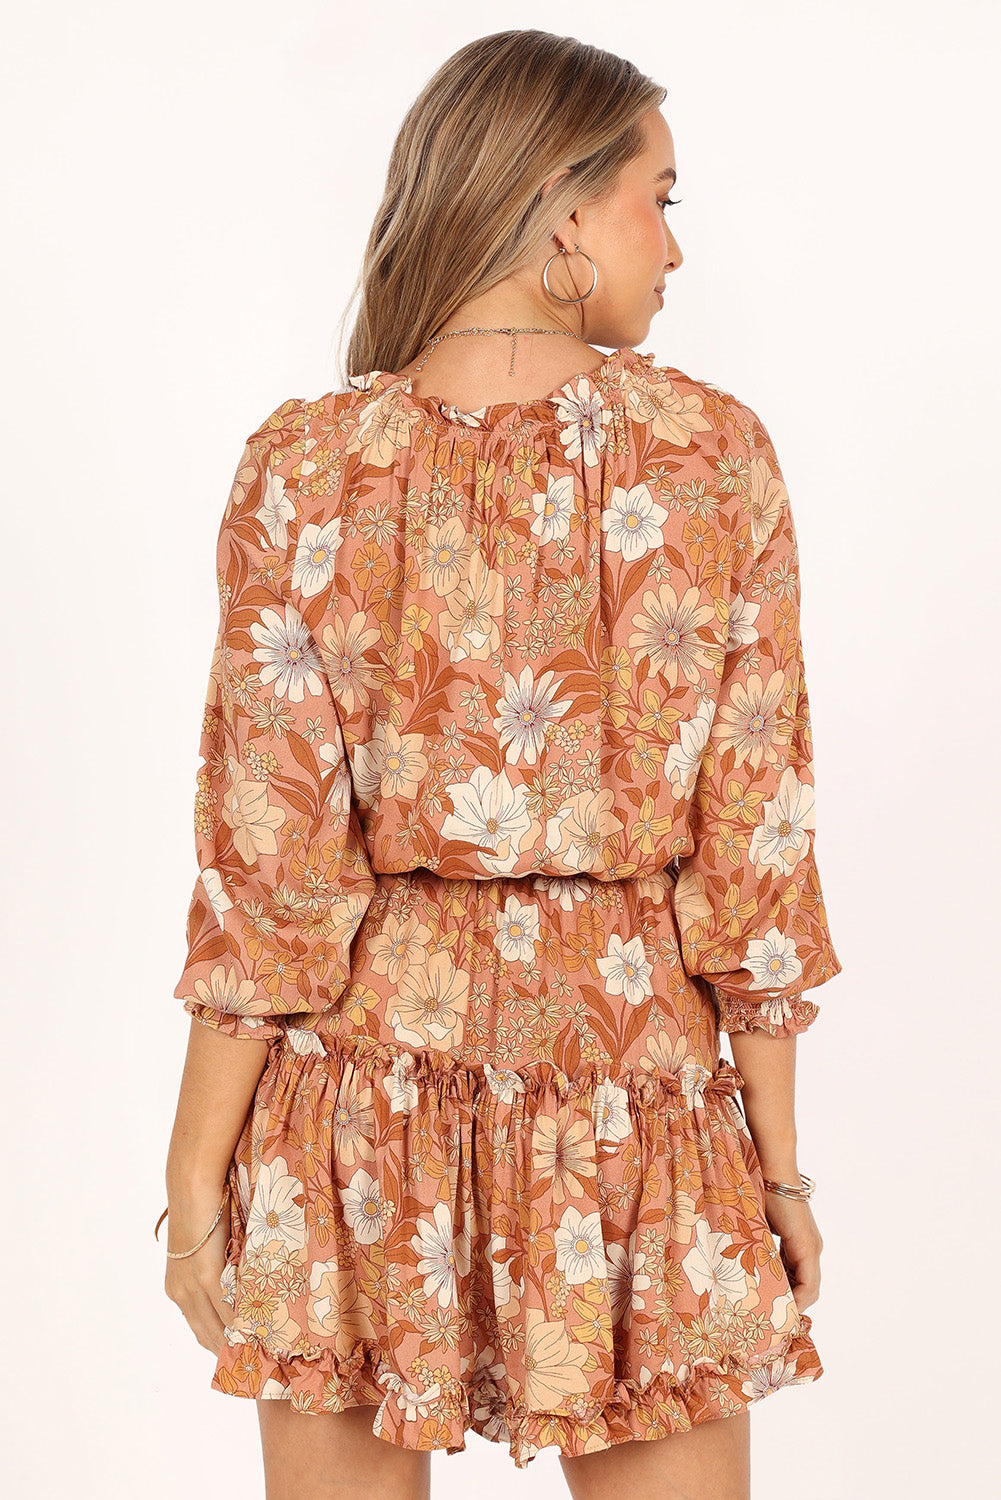 Kamelfarbenes, geblümtes Tunika-Kleid mit Schnürung und geteiltem Ausschnitt